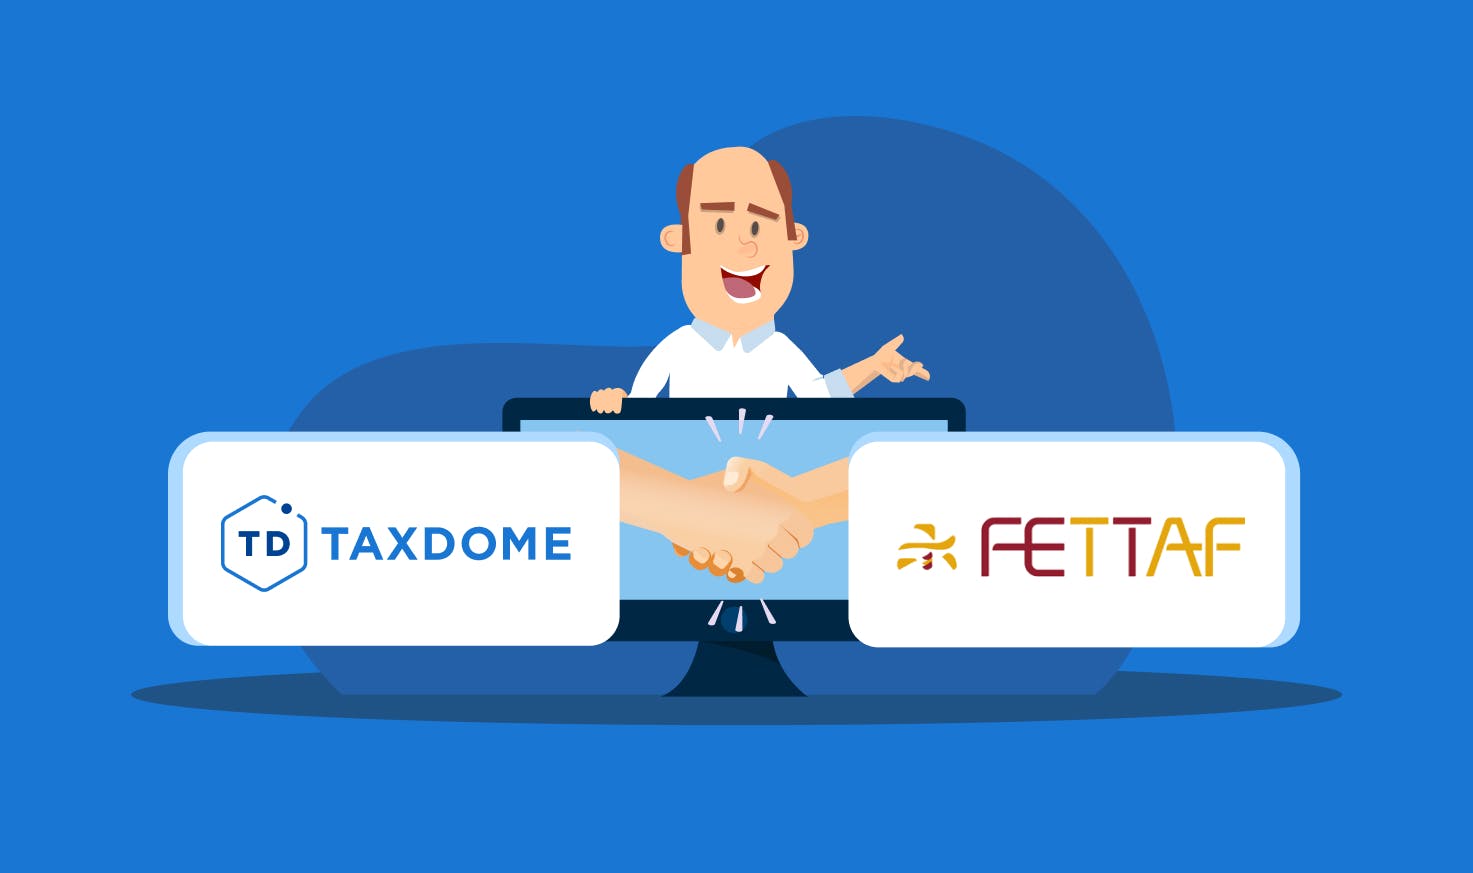 TaxDome Kondigt Partnerschap met FETTAF Aan